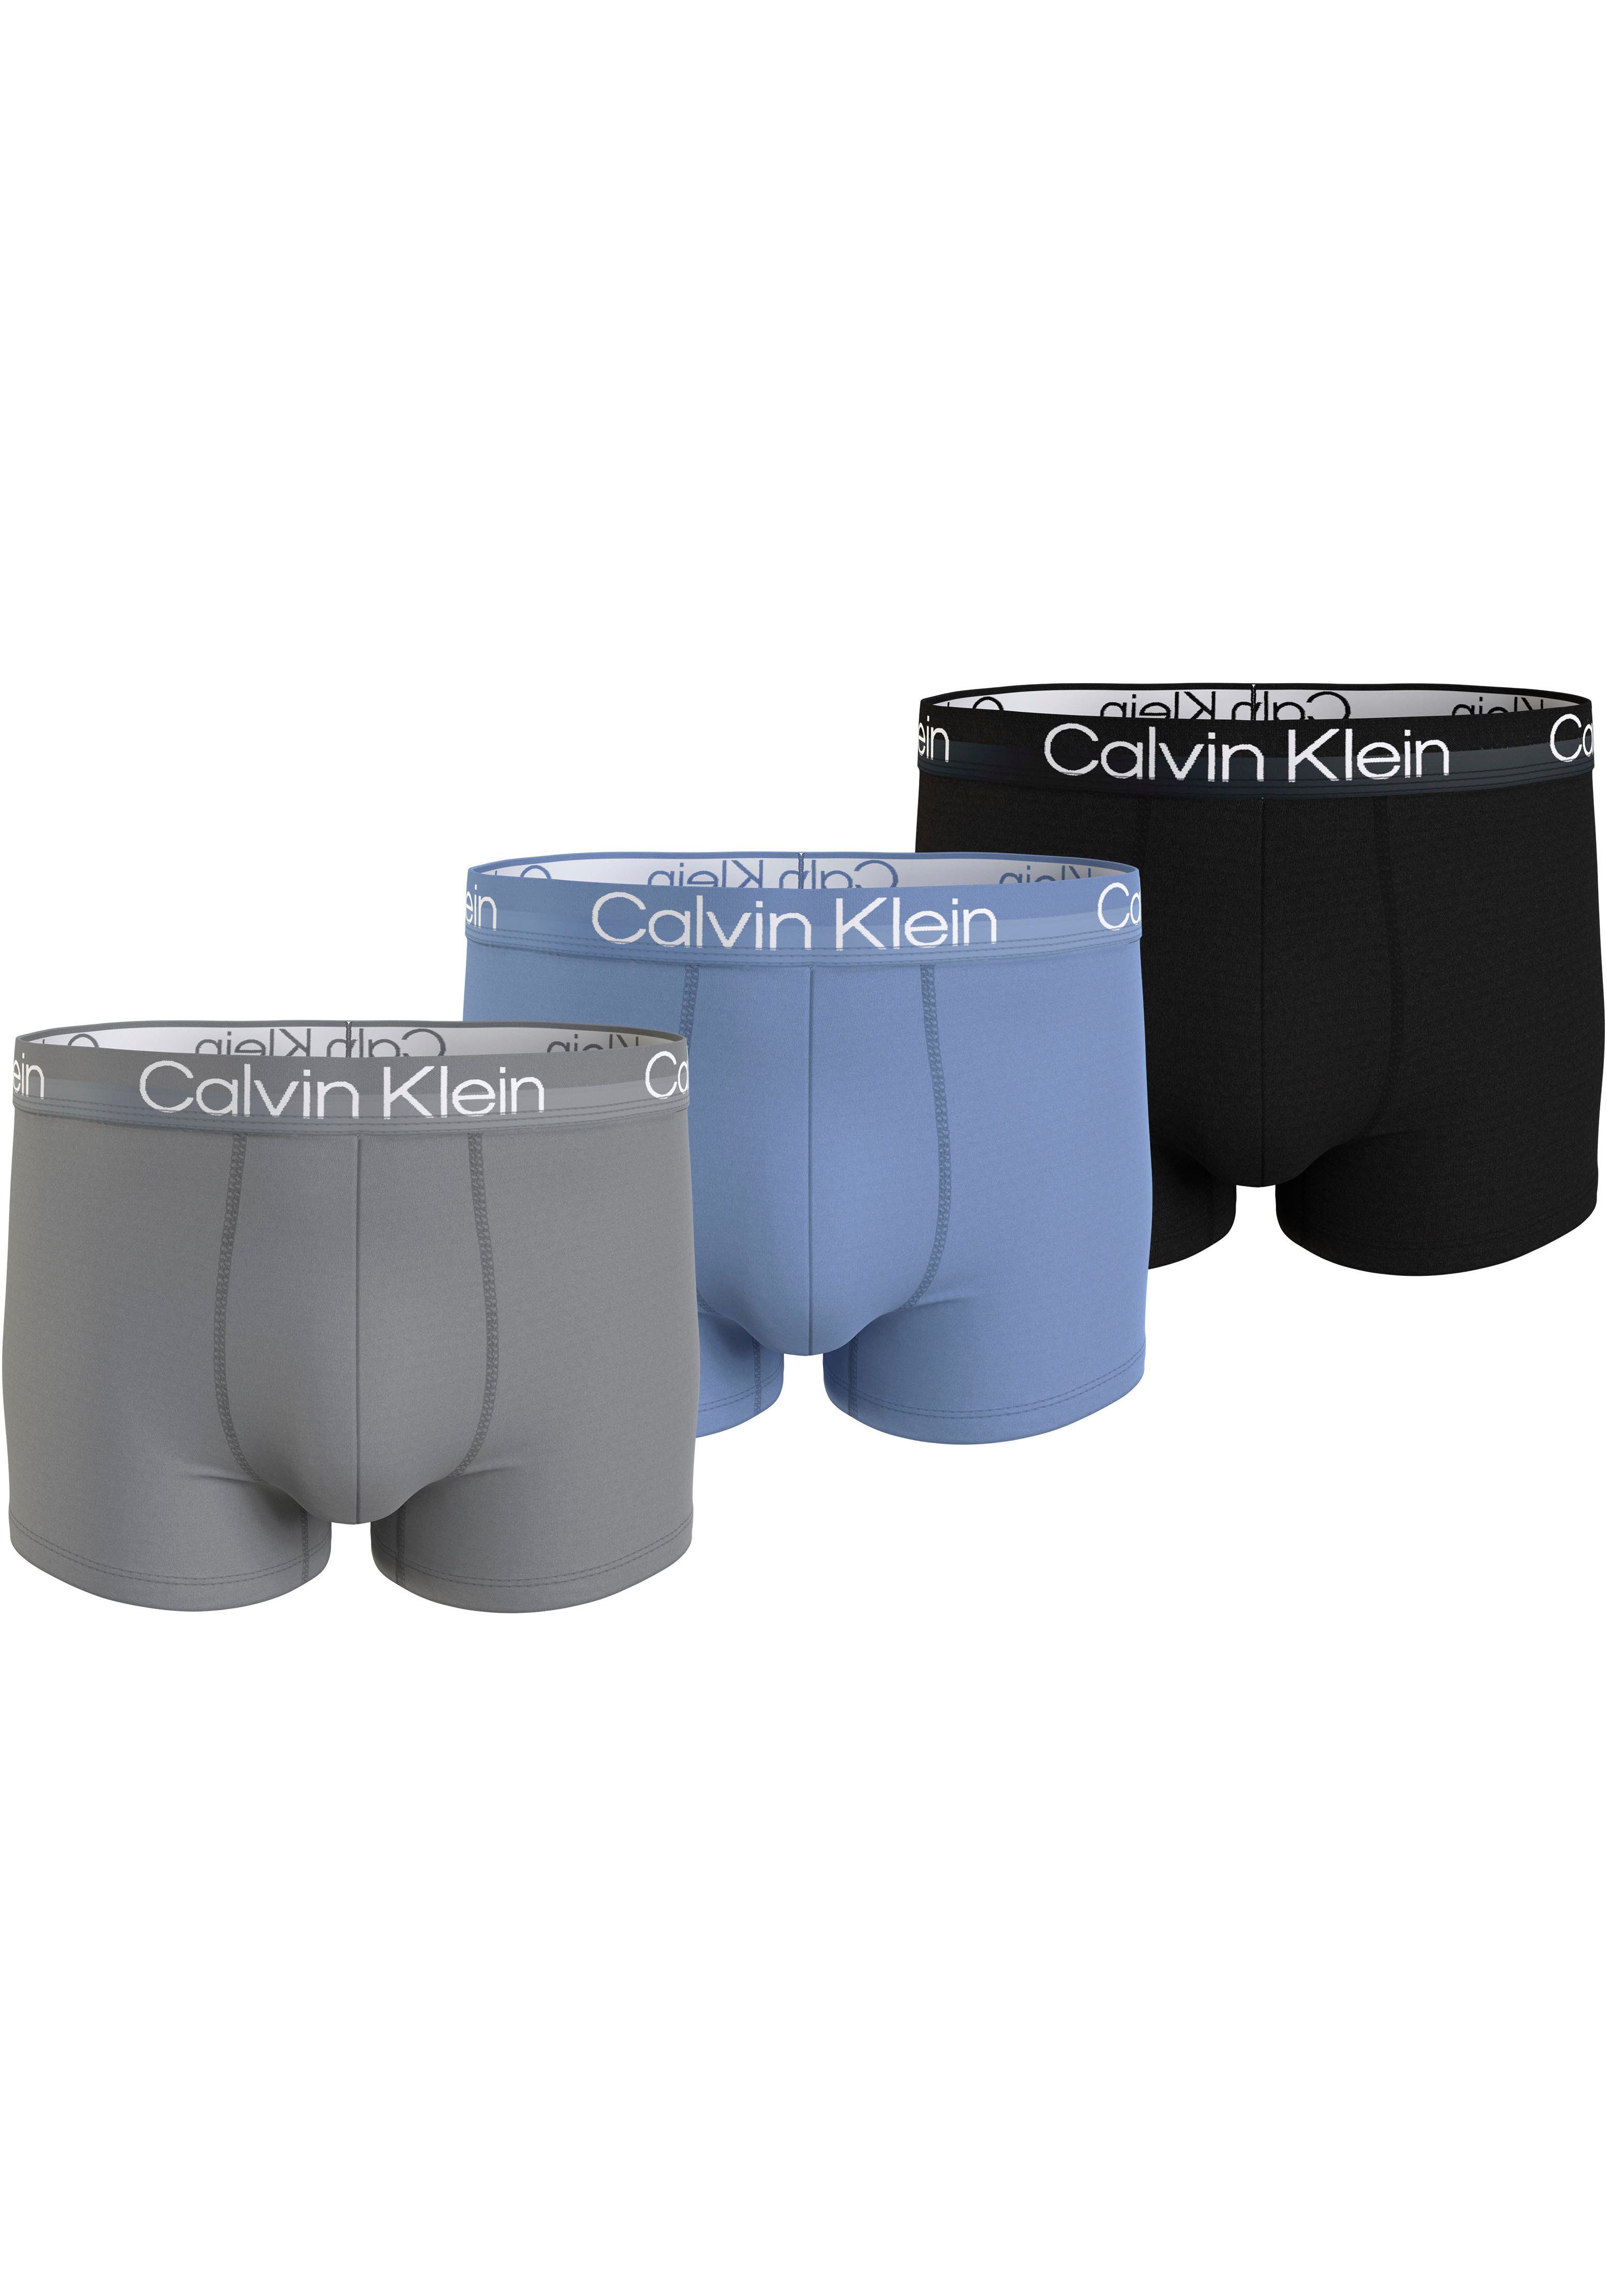 Calvin Klein Trunk met logo in de band (set 3 stuks)